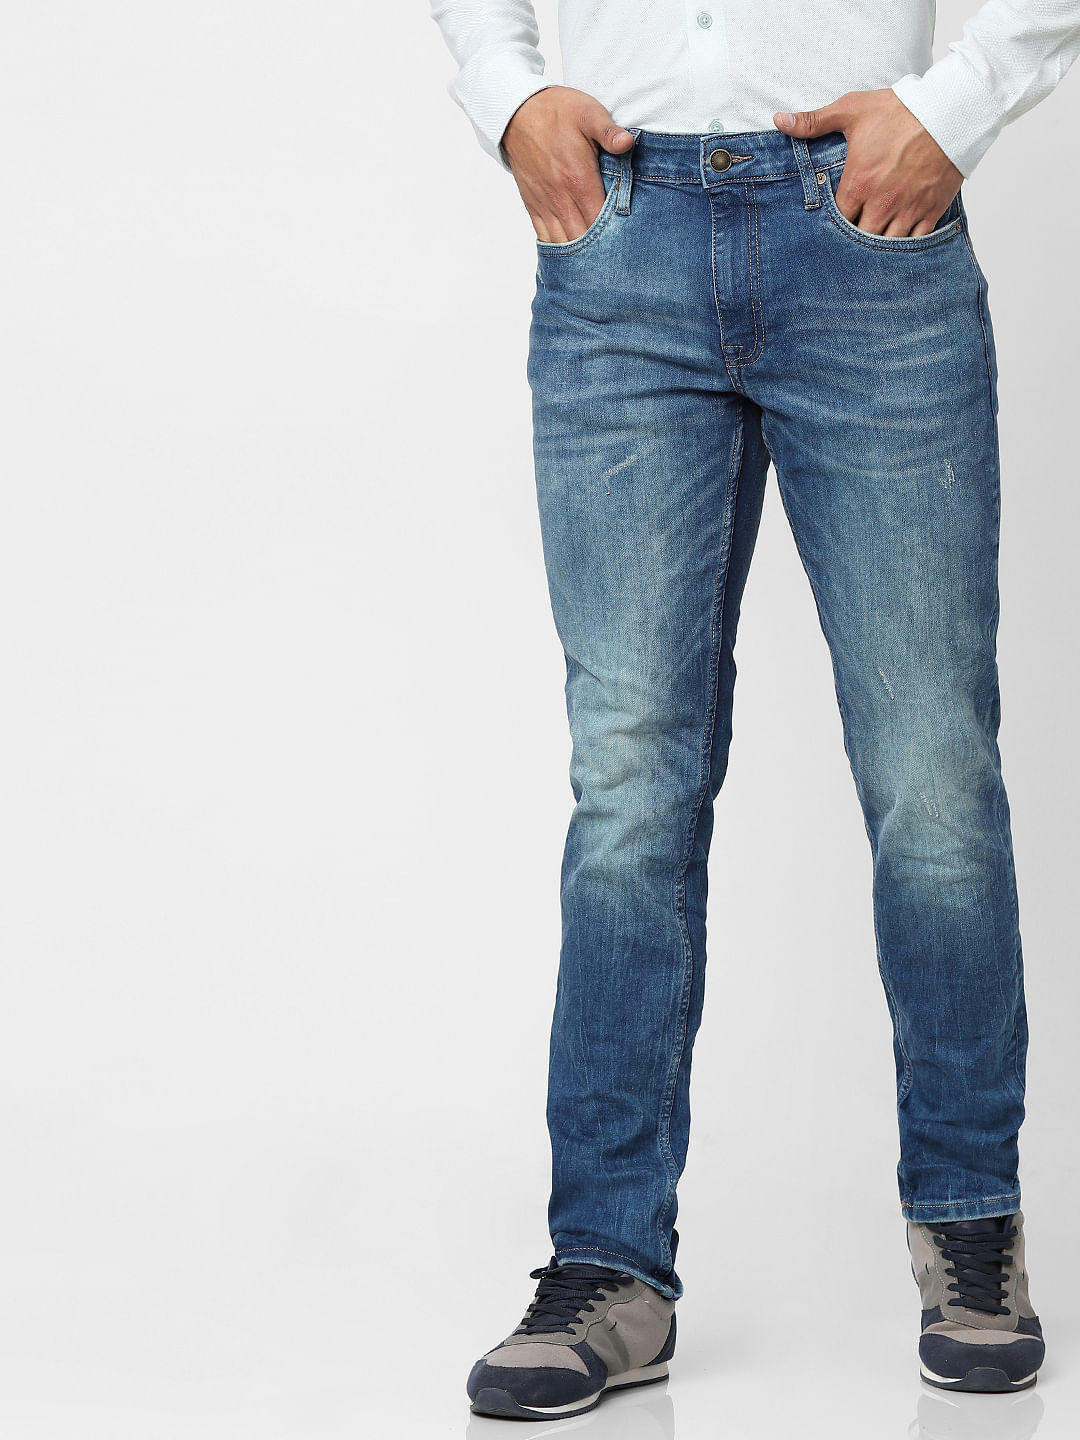 Buy Blue Solid Slim Fit Jeans for Men Online at Killer Jeans  471549